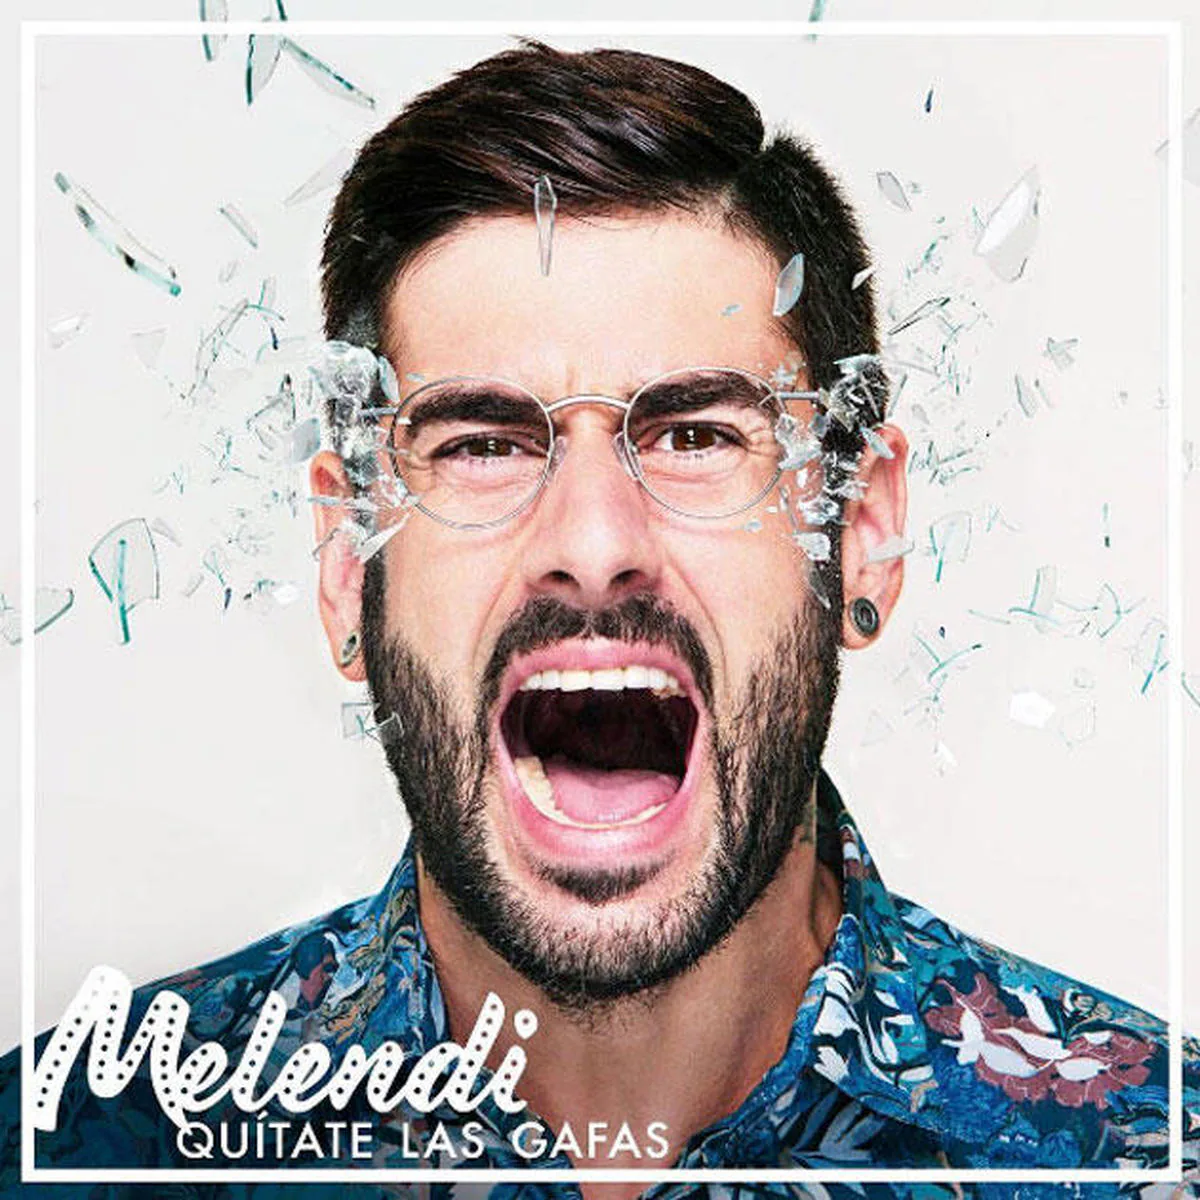 La Gira Quítate las gafas de Melendi llegará a Salamanca con más de 5.000 entradas vendidas